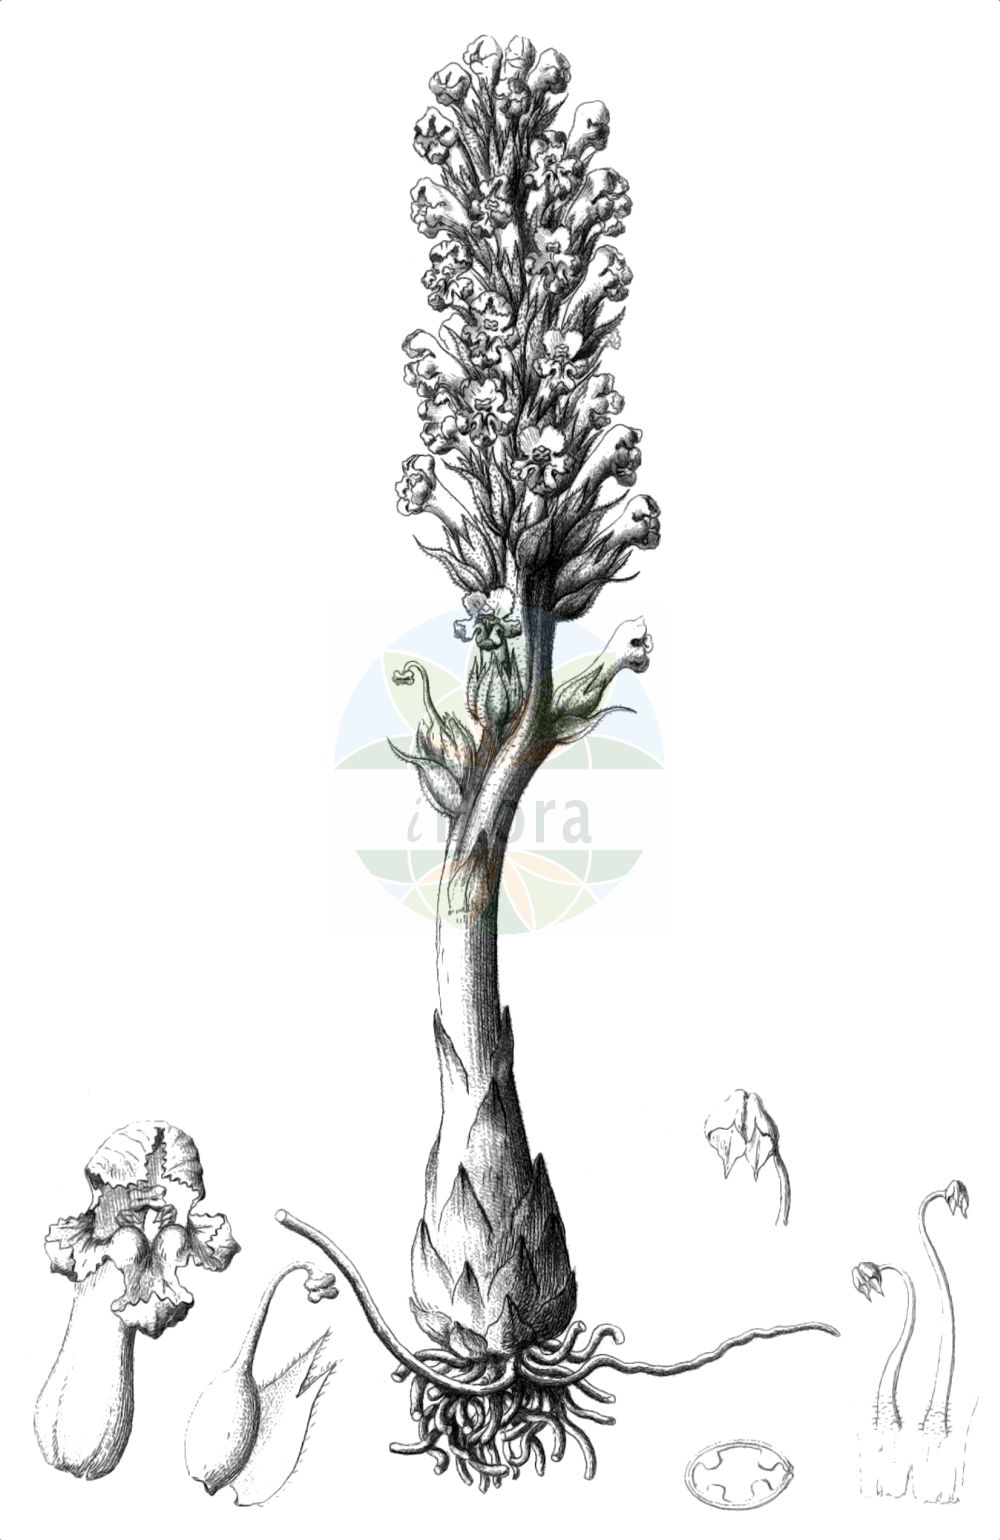 Historische Abbildung von Orobanche coerulescens (Bläuliche Sommerwurz - Blue Broomrape). Das Bild zeigt Blatt, Bluete, Frucht und Same. ---- Historical Drawing of Orobanche coerulescens (Bläuliche Sommerwurz - Blue Broomrape). The image is showing leaf, flower, fruit and seed.(Orobanche coerulescens,Bläuliche Sommerwurz,Blue Broomrape,Orobanche coerulescens,Orobanche korshinskyi,Blaeuliche Sommerwurz,Blue Broomrape,Orobanche,Sommerwurz,Broomrape,Orobanchaceae,Sommerwurzgewächse,Broomrape family,Blatt,Bluete,Frucht,Same,leaf,flower,fruit,seed,Reichenbach (1823-1832))